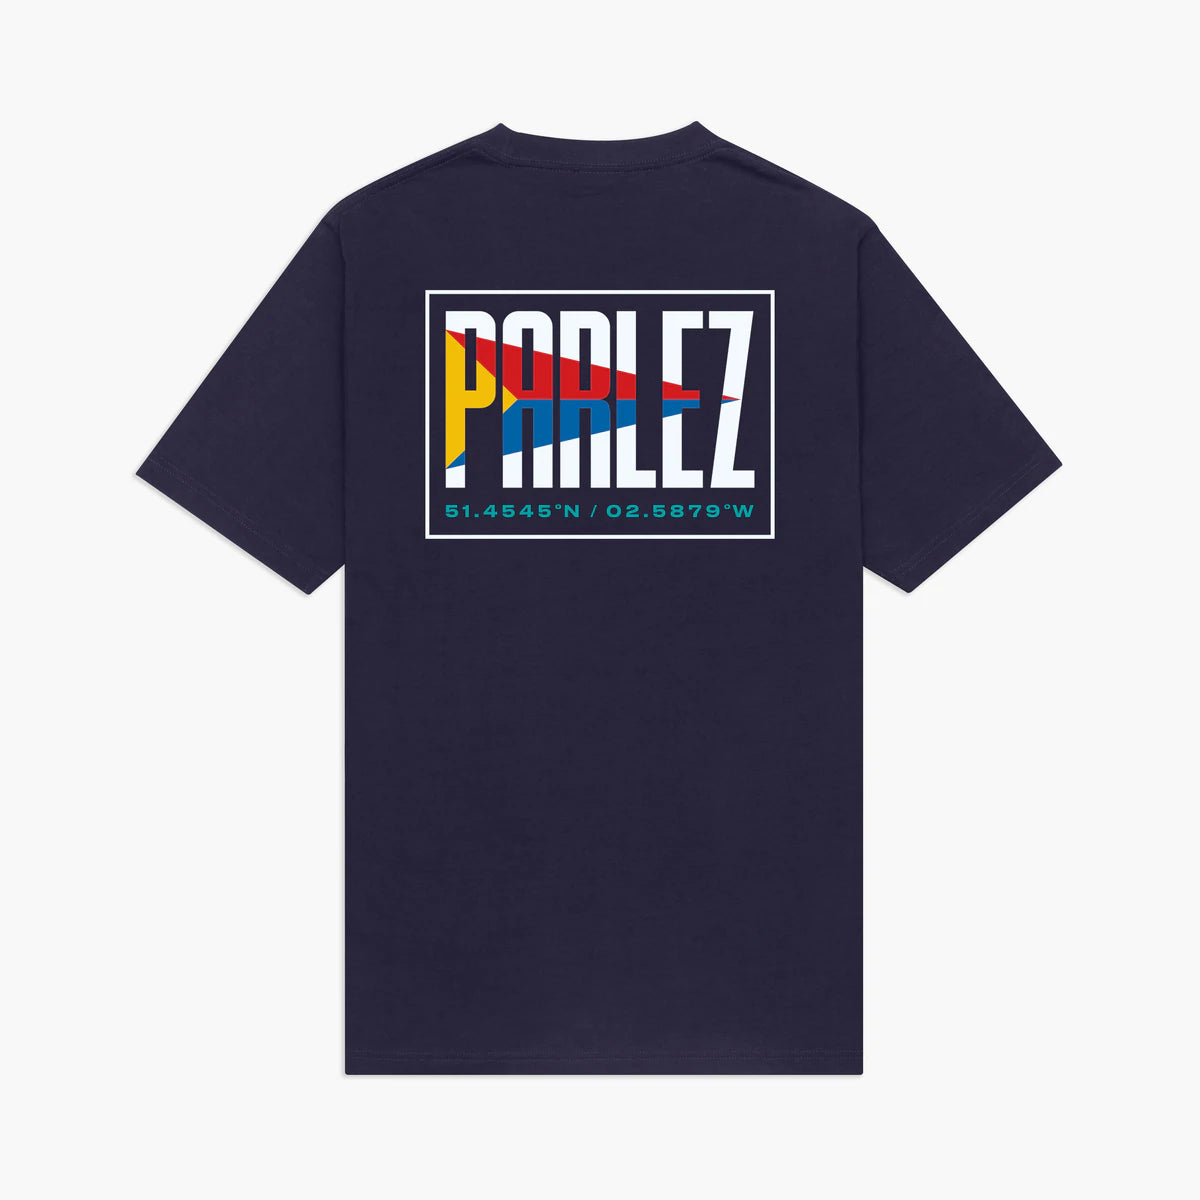 Parlez - Club T-Shirt - Navy